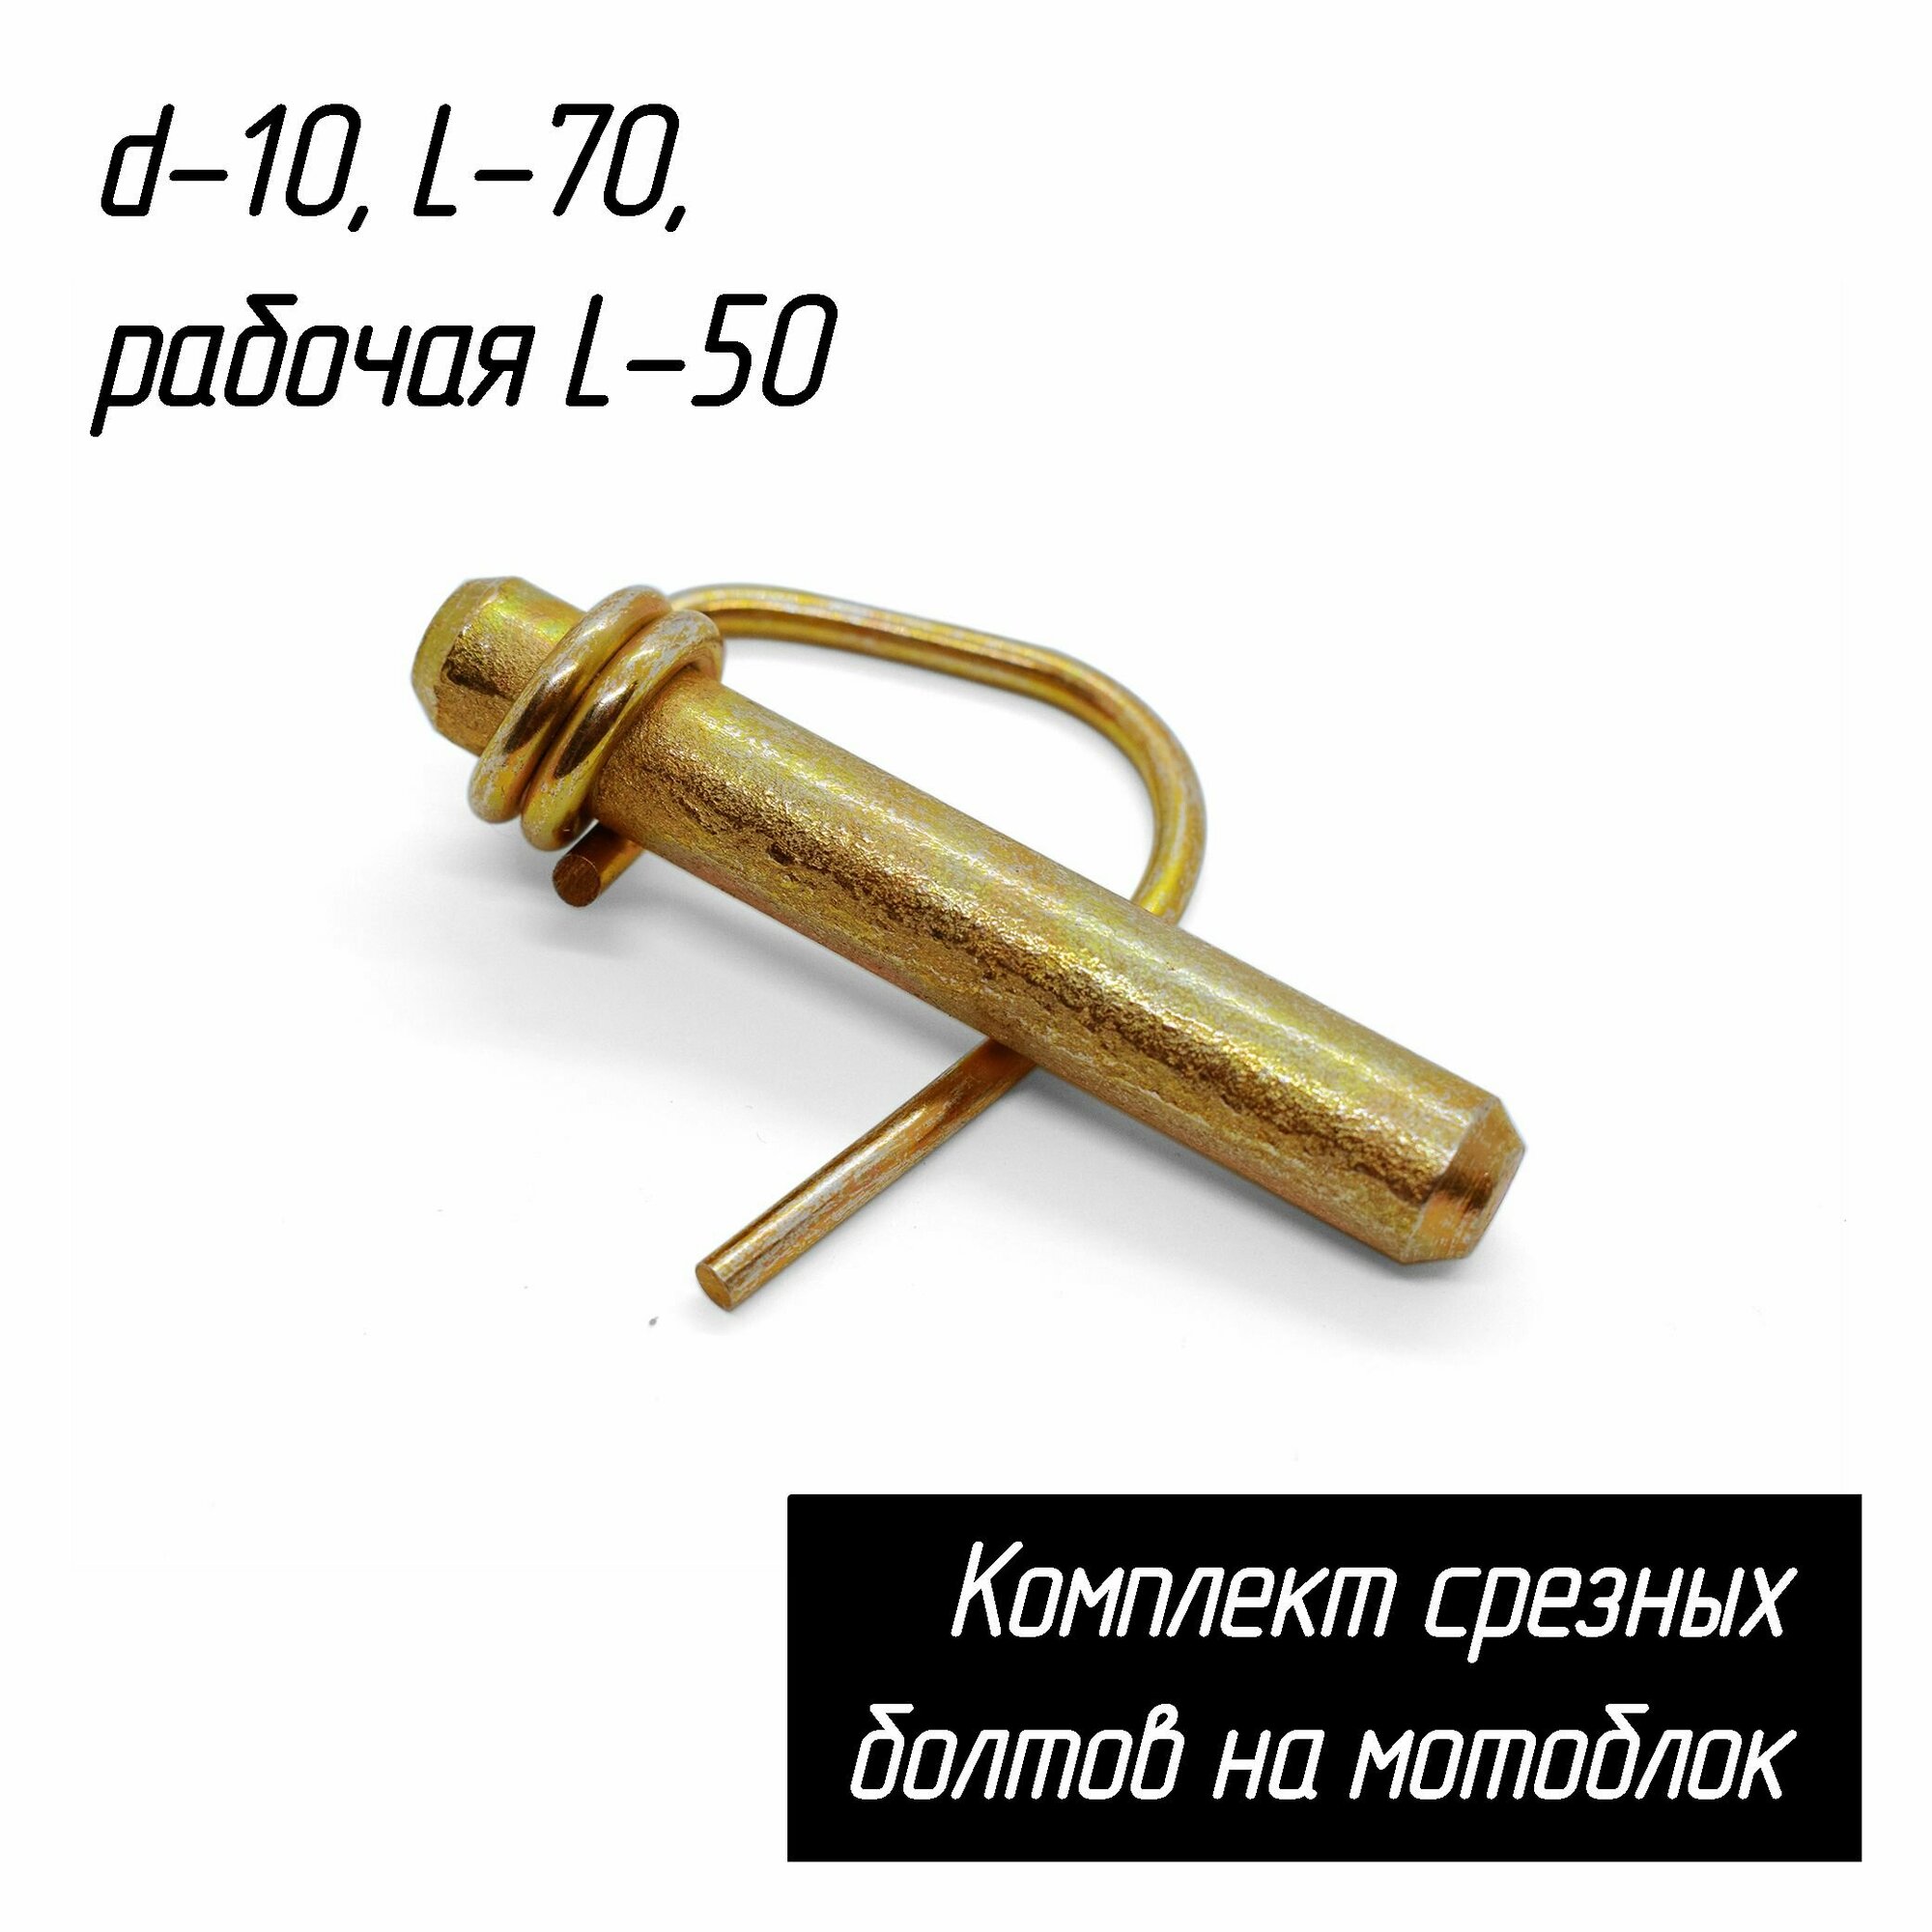 Стопор фрез (срезной болт - палец) для мотоблоков d-10 L-70 рабочая L-50 AEZ